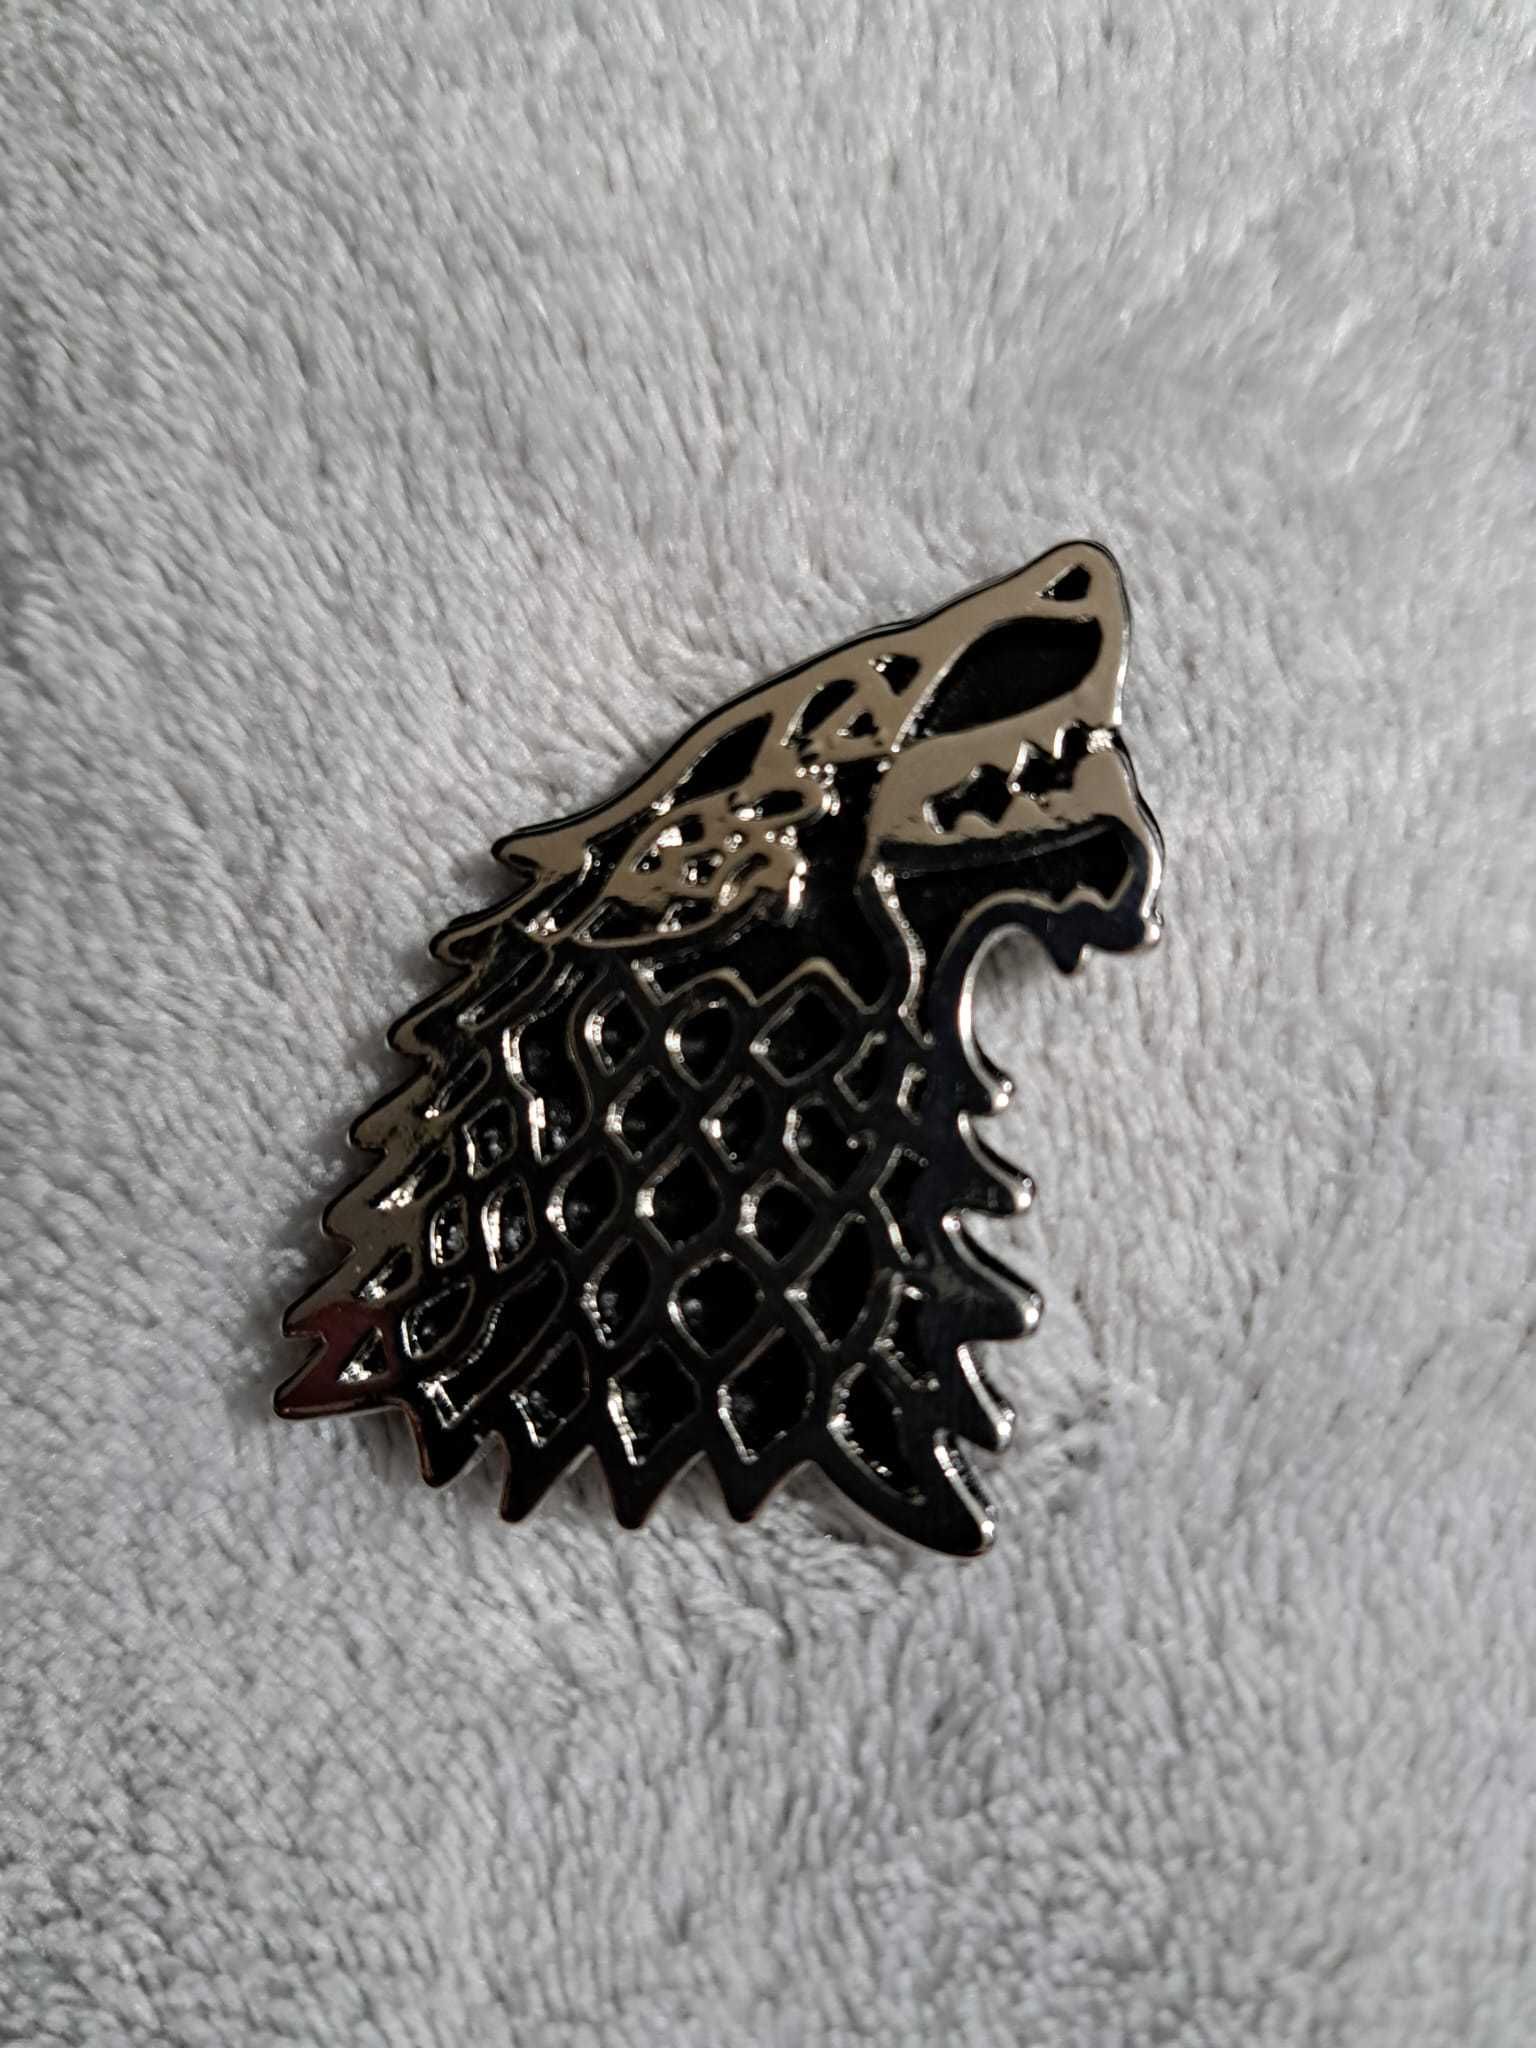 Game of Thrones Guerra dos Tronos pin Stark direwolve NOVO SELADO